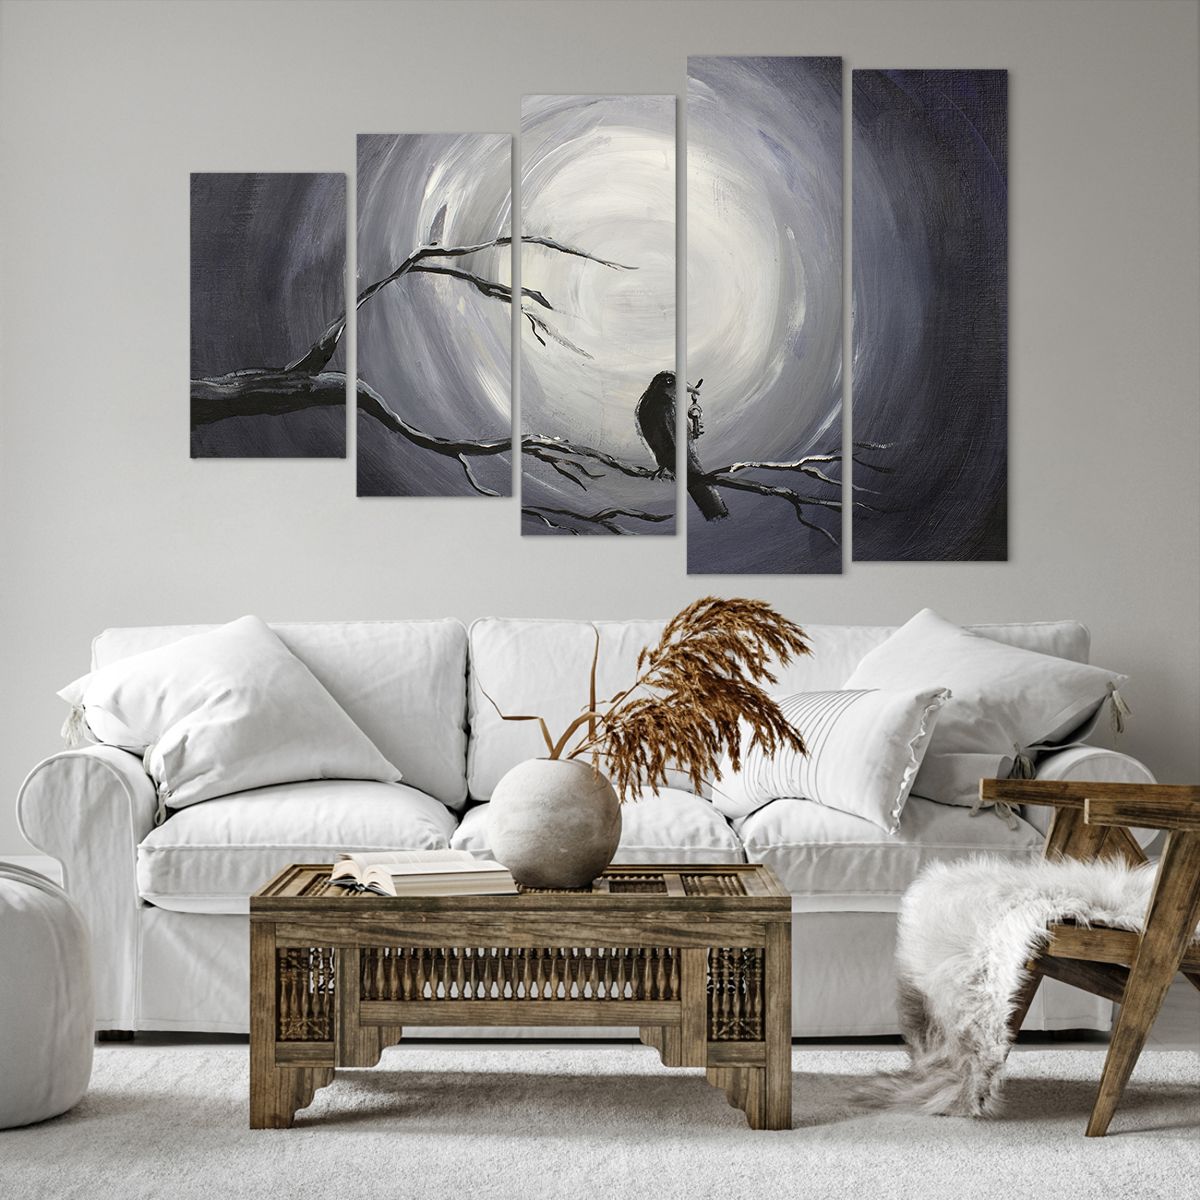 Bild auf Leinwand Abstraktion, Bild auf Leinwand Krähe, Bild auf Leinwand Vogel, Bild auf Leinwand Mond, Bild auf Leinwand Schwarz Und Weiß